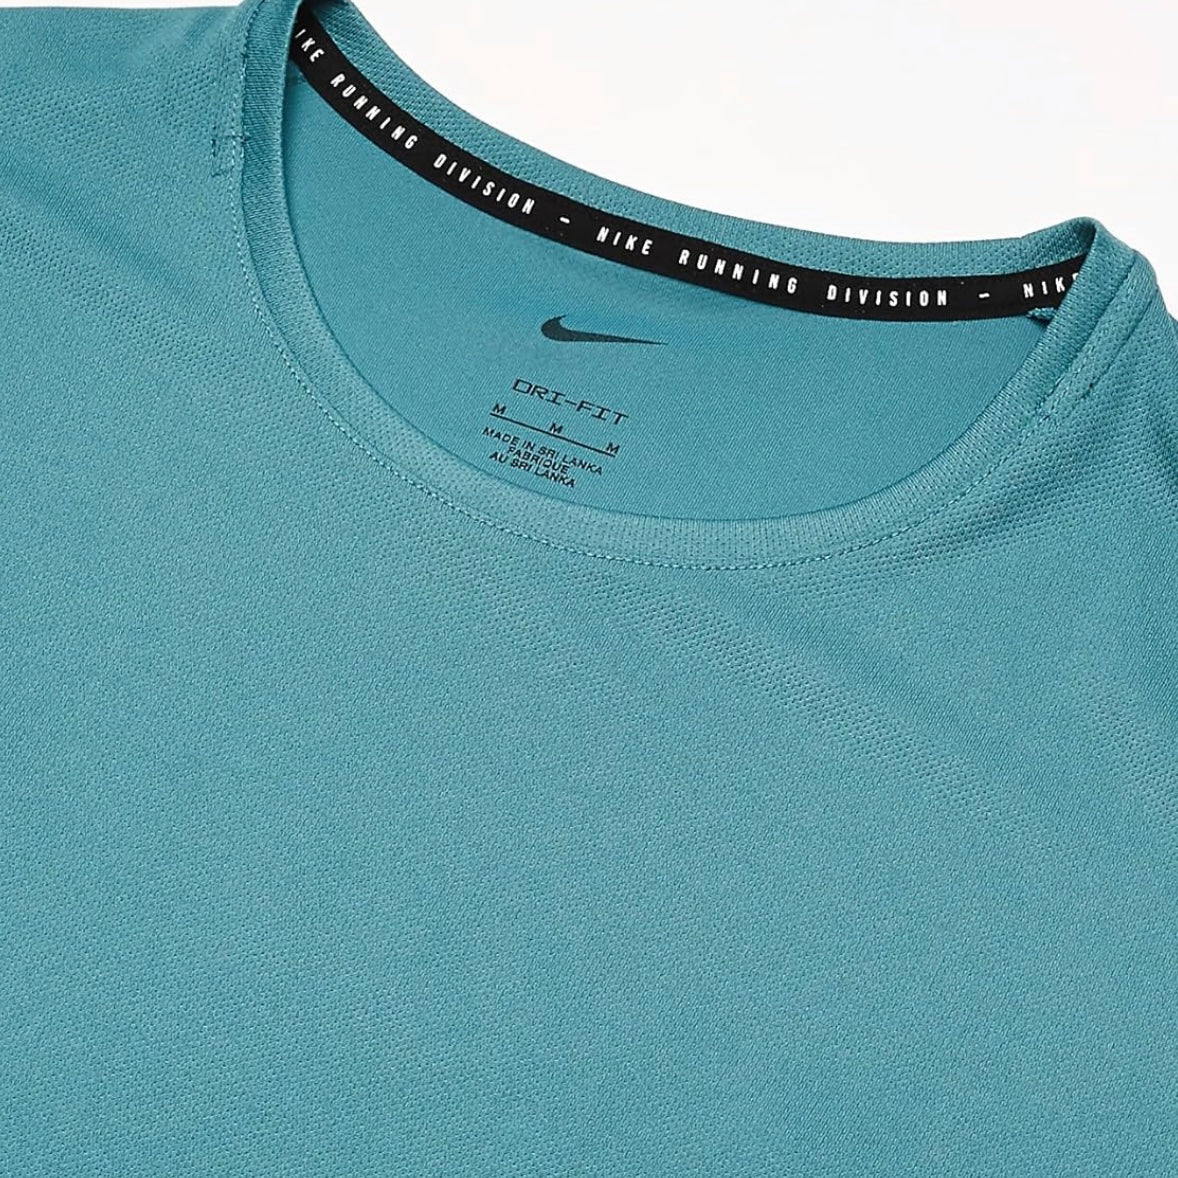 Nike Dri-Fit UV Run DVSN Miler 1.0 T-Shirt - Mineral Blue